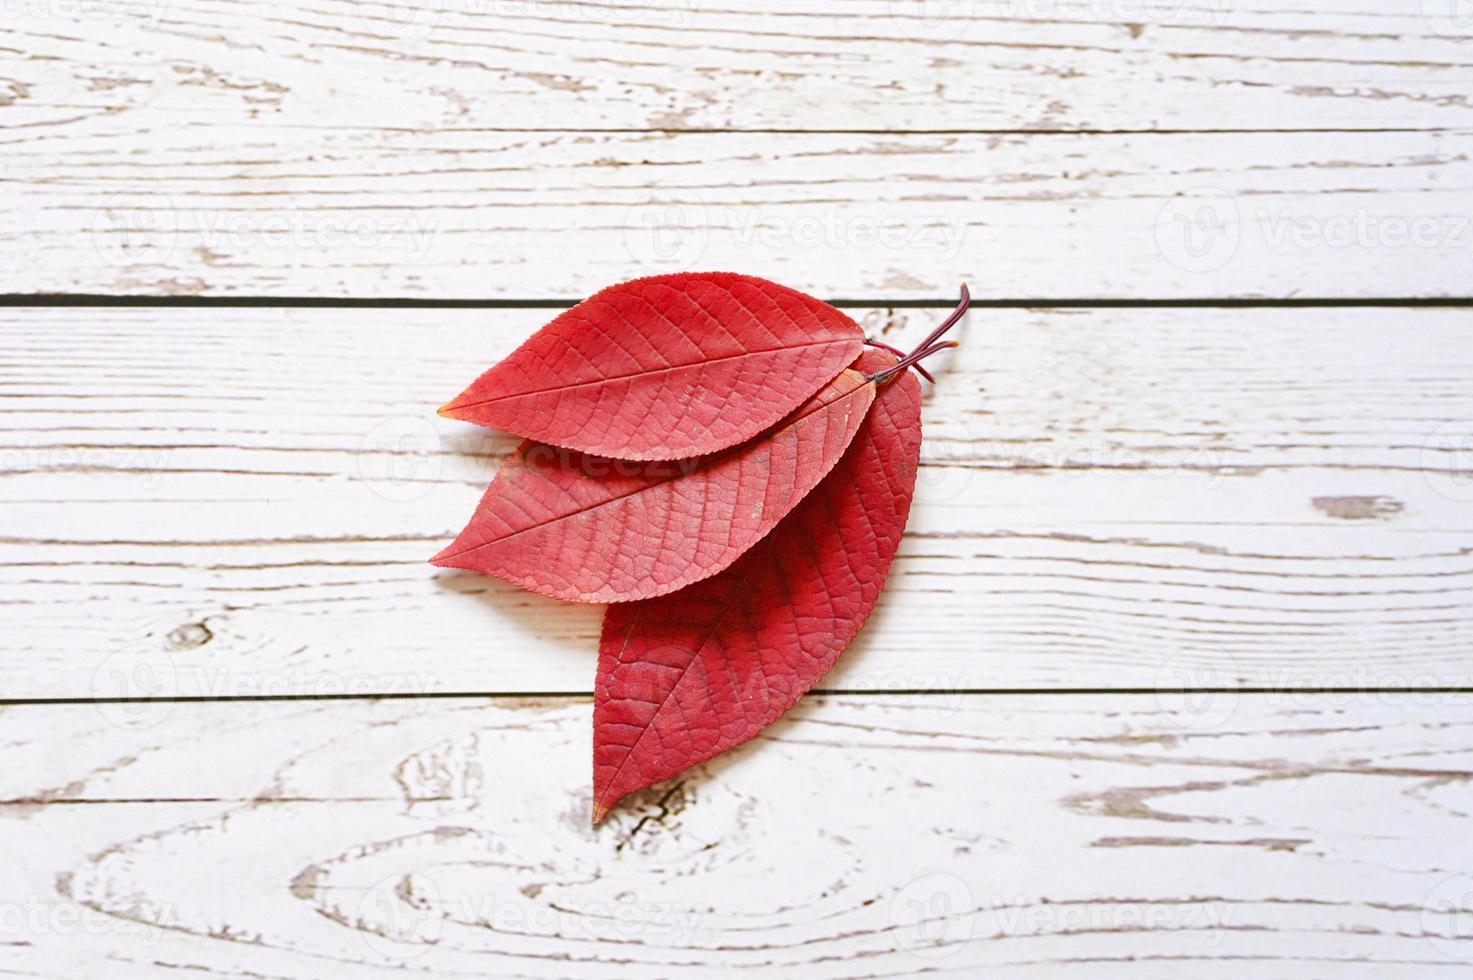 flera röda höstfallna löv på en ljus träbrädebakgrund foto